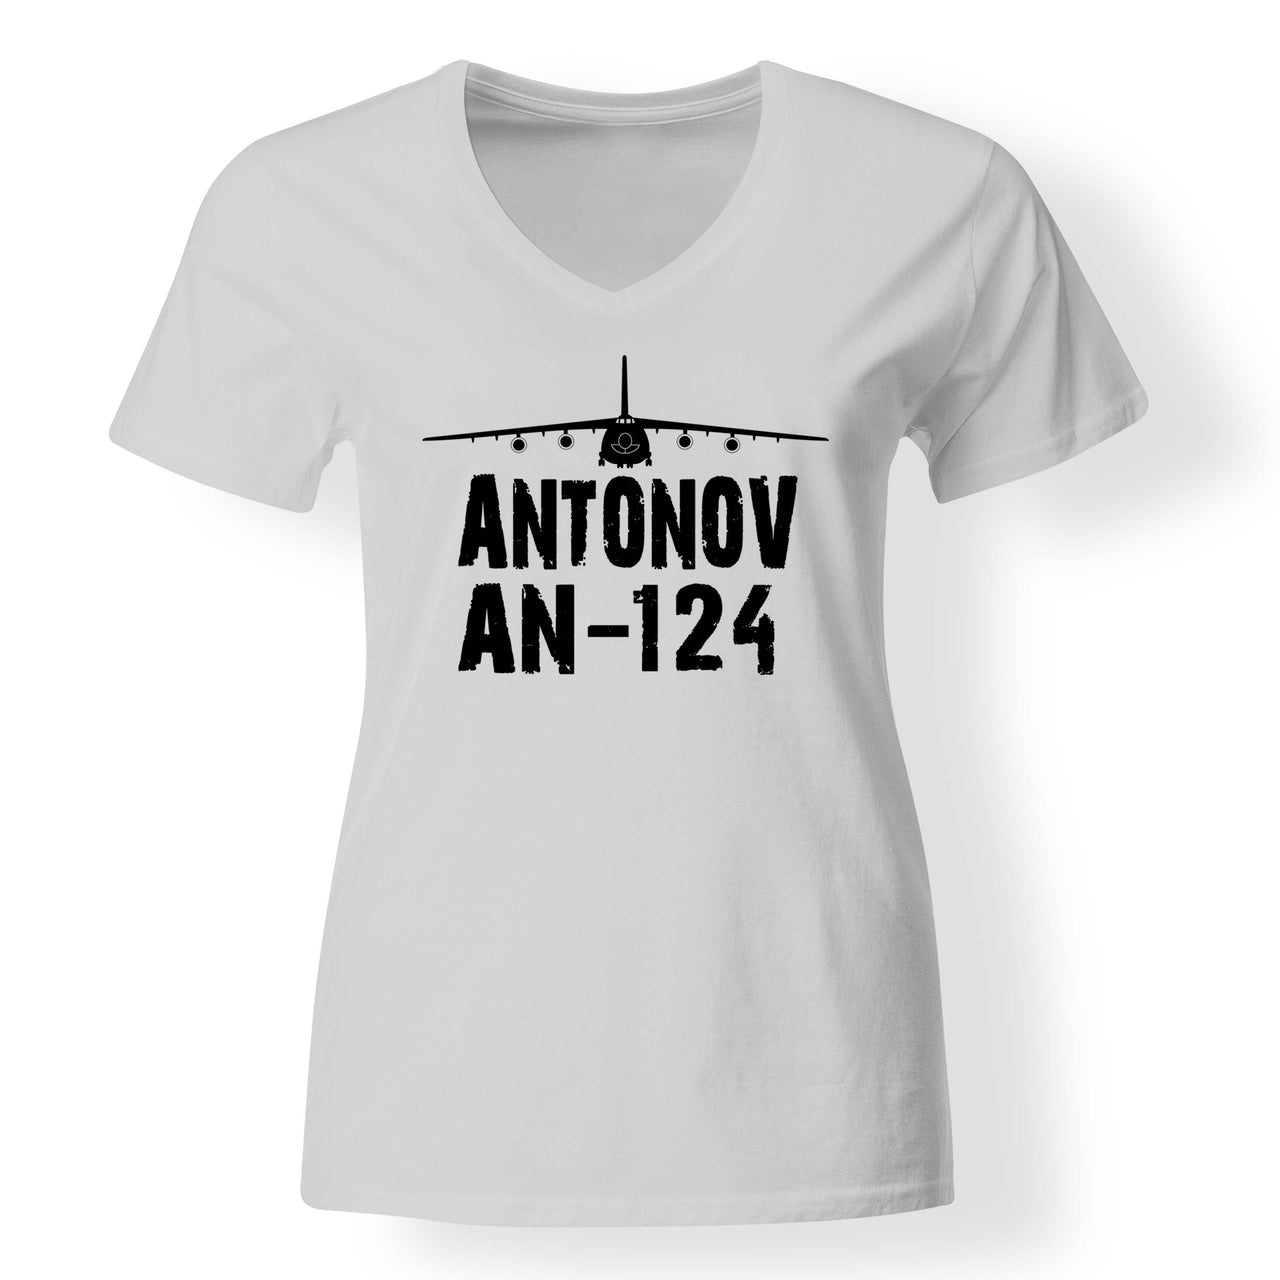 Antonov AN-124 & Plane Designed V-Neck T-Shirts